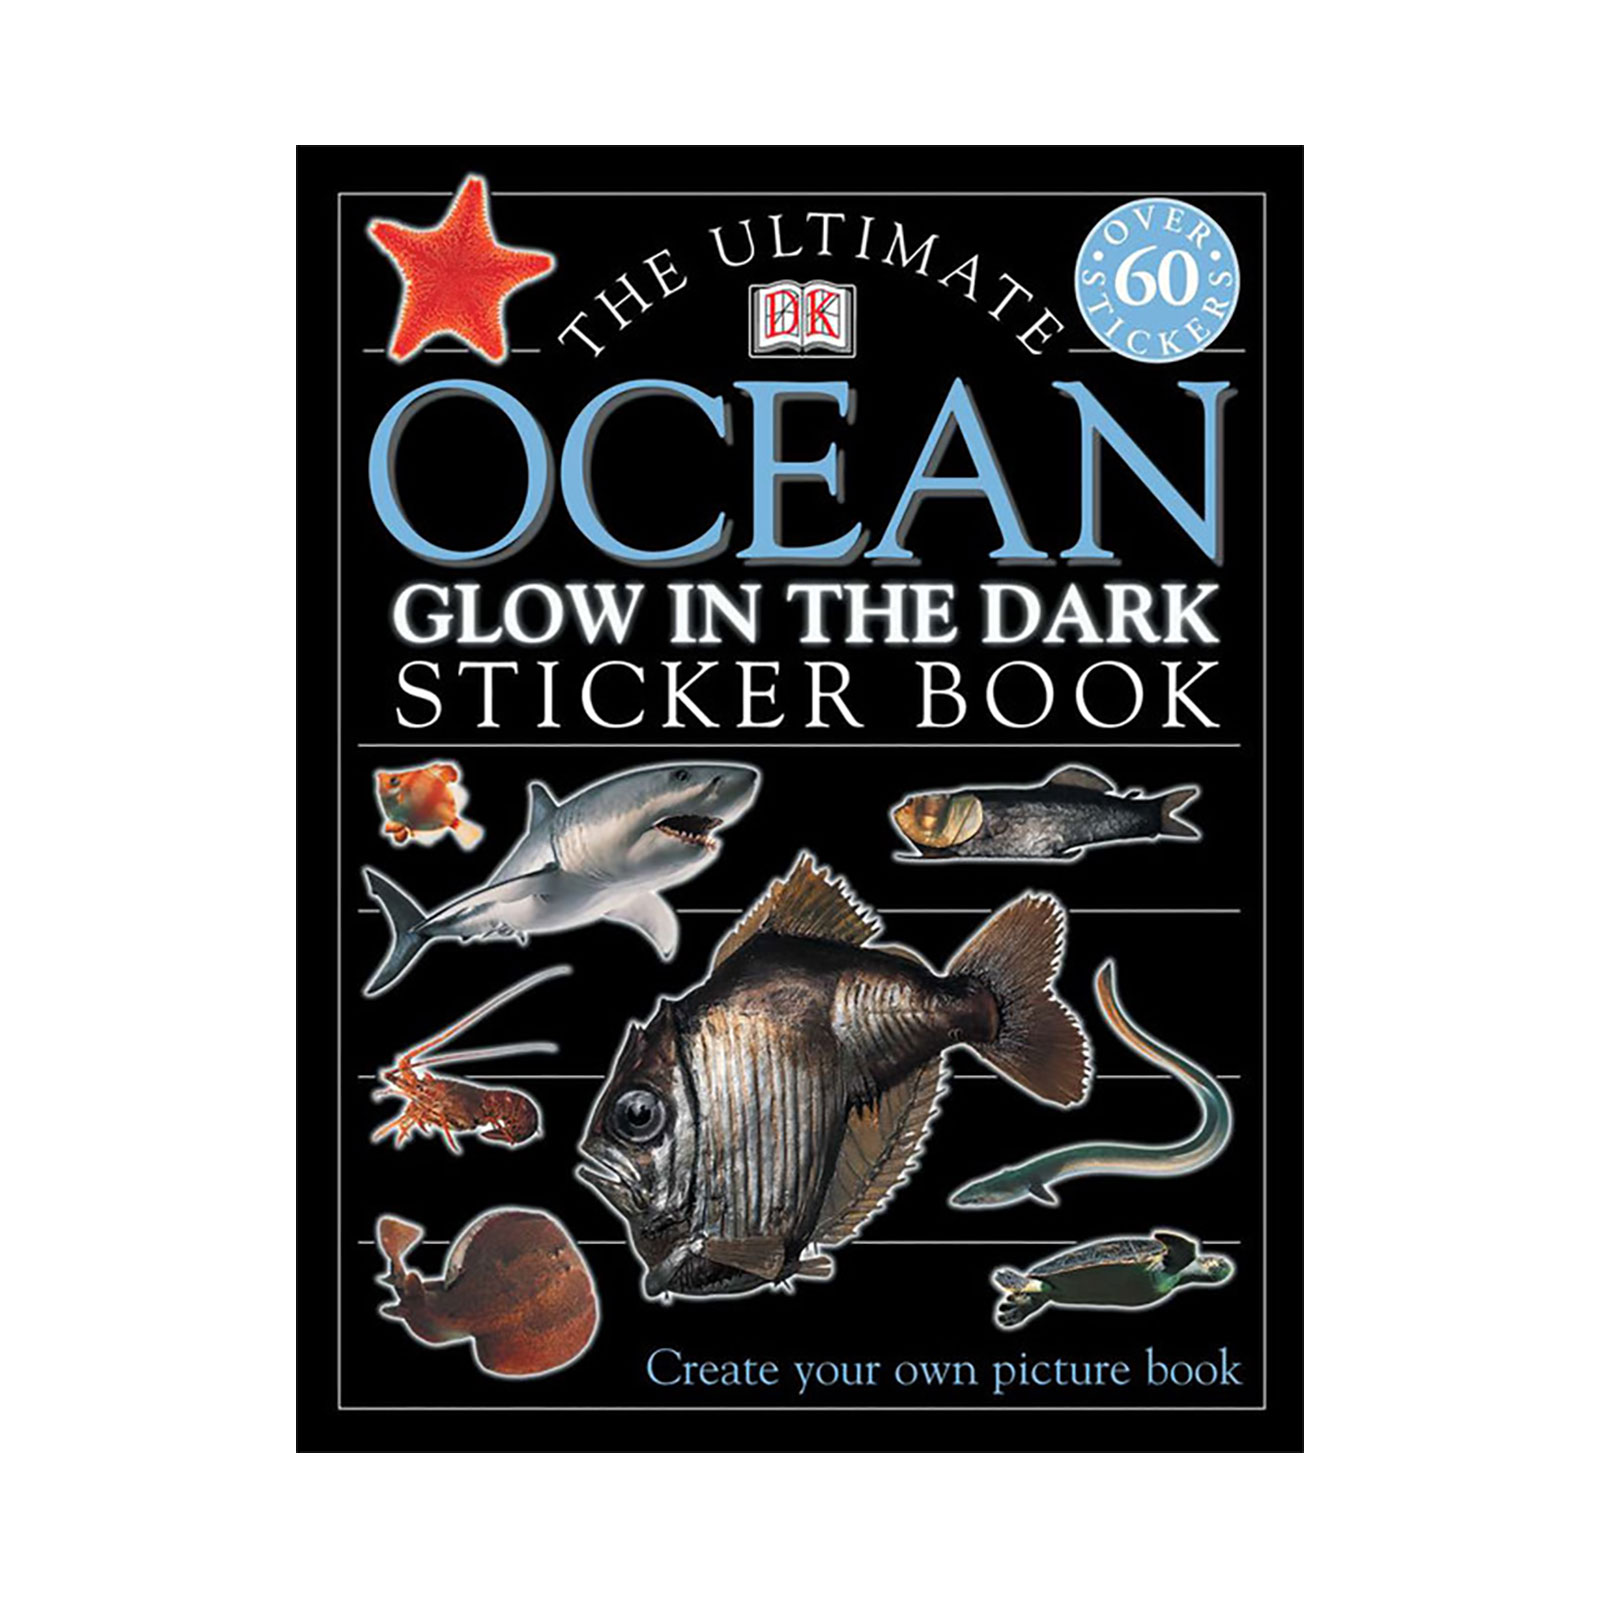 https://rustydelmar.com/wp-content/uploads/2023/03/the-ultimate-ocean-glow-in-the-dark-sticker-book.jpg